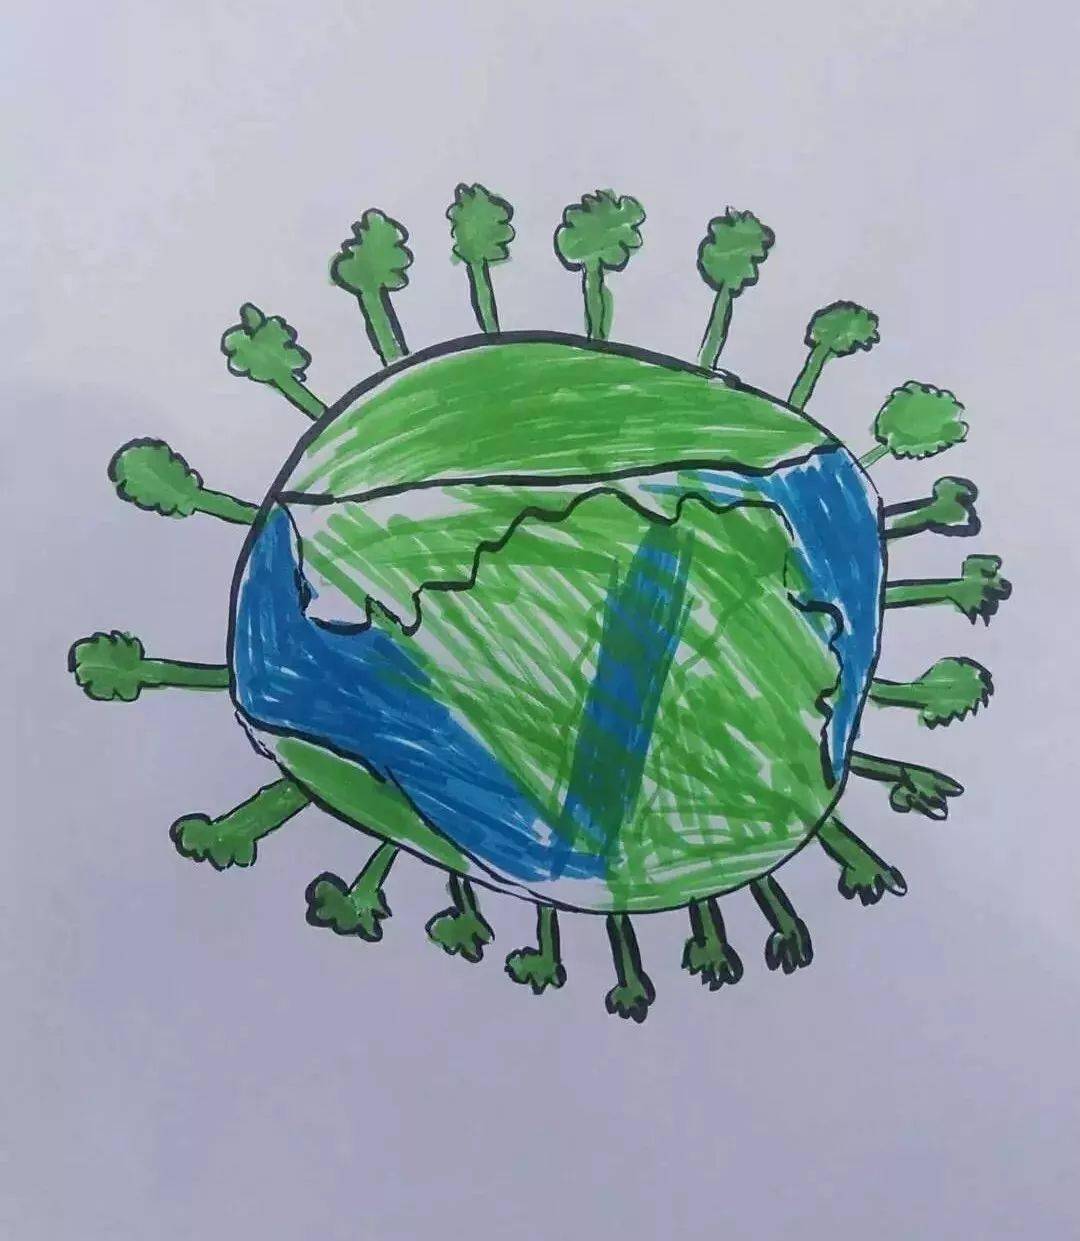 全国的绿种宝宝们请注意我们已正式加入彩色地球核心伙伴阵营啦